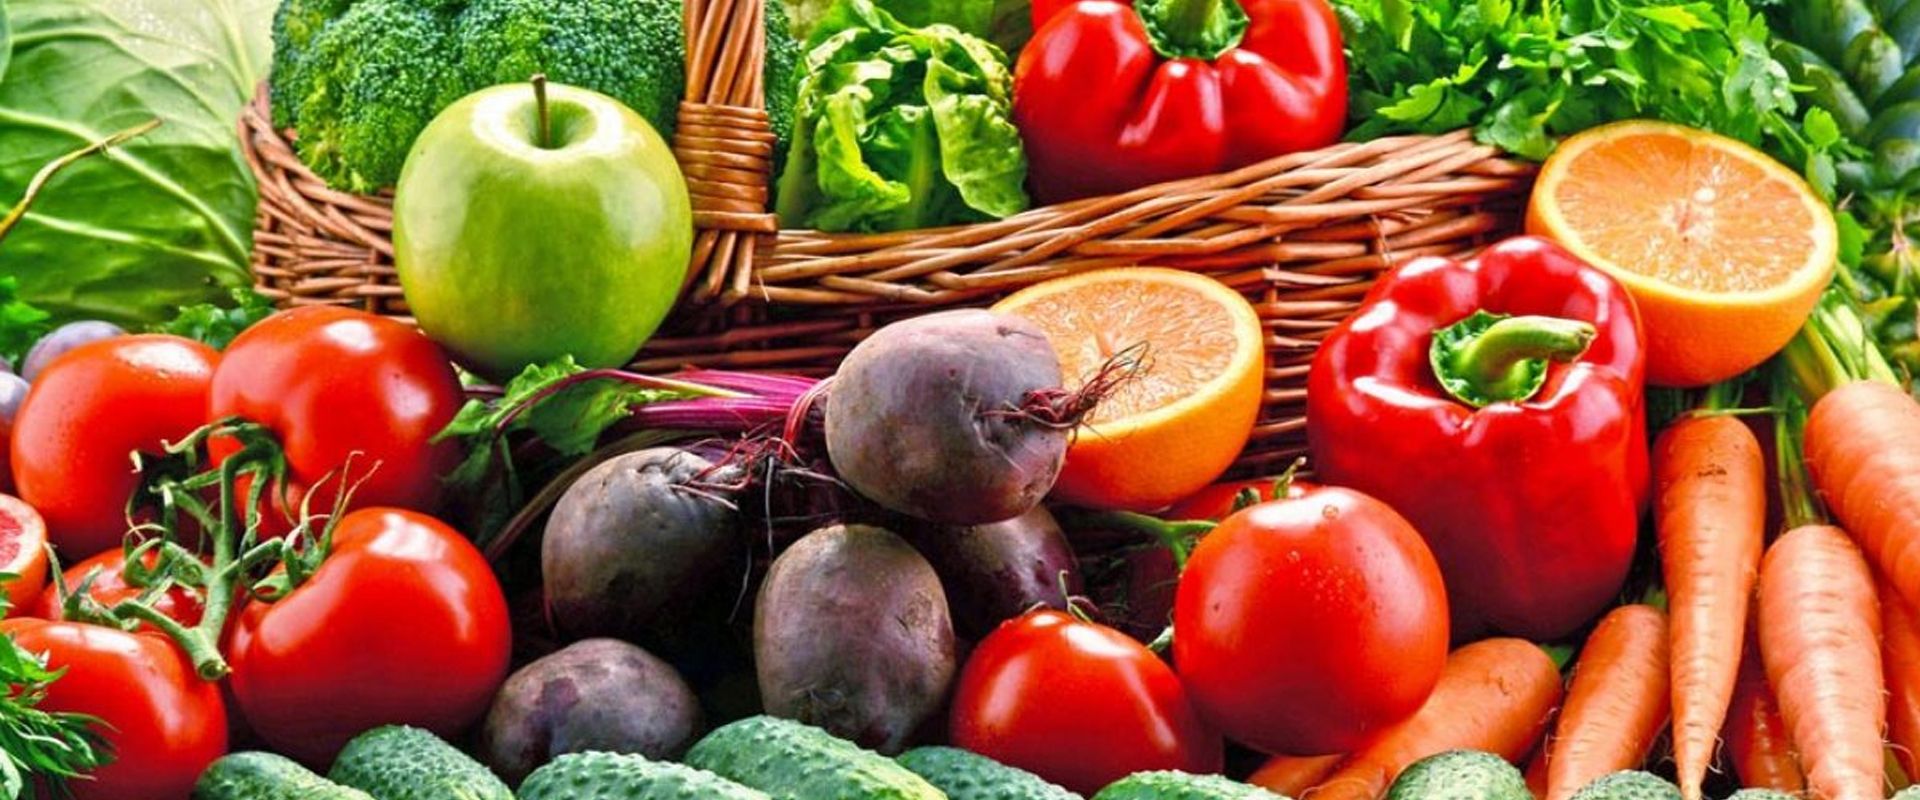 Canasta con frutas, verduras y hortalizas